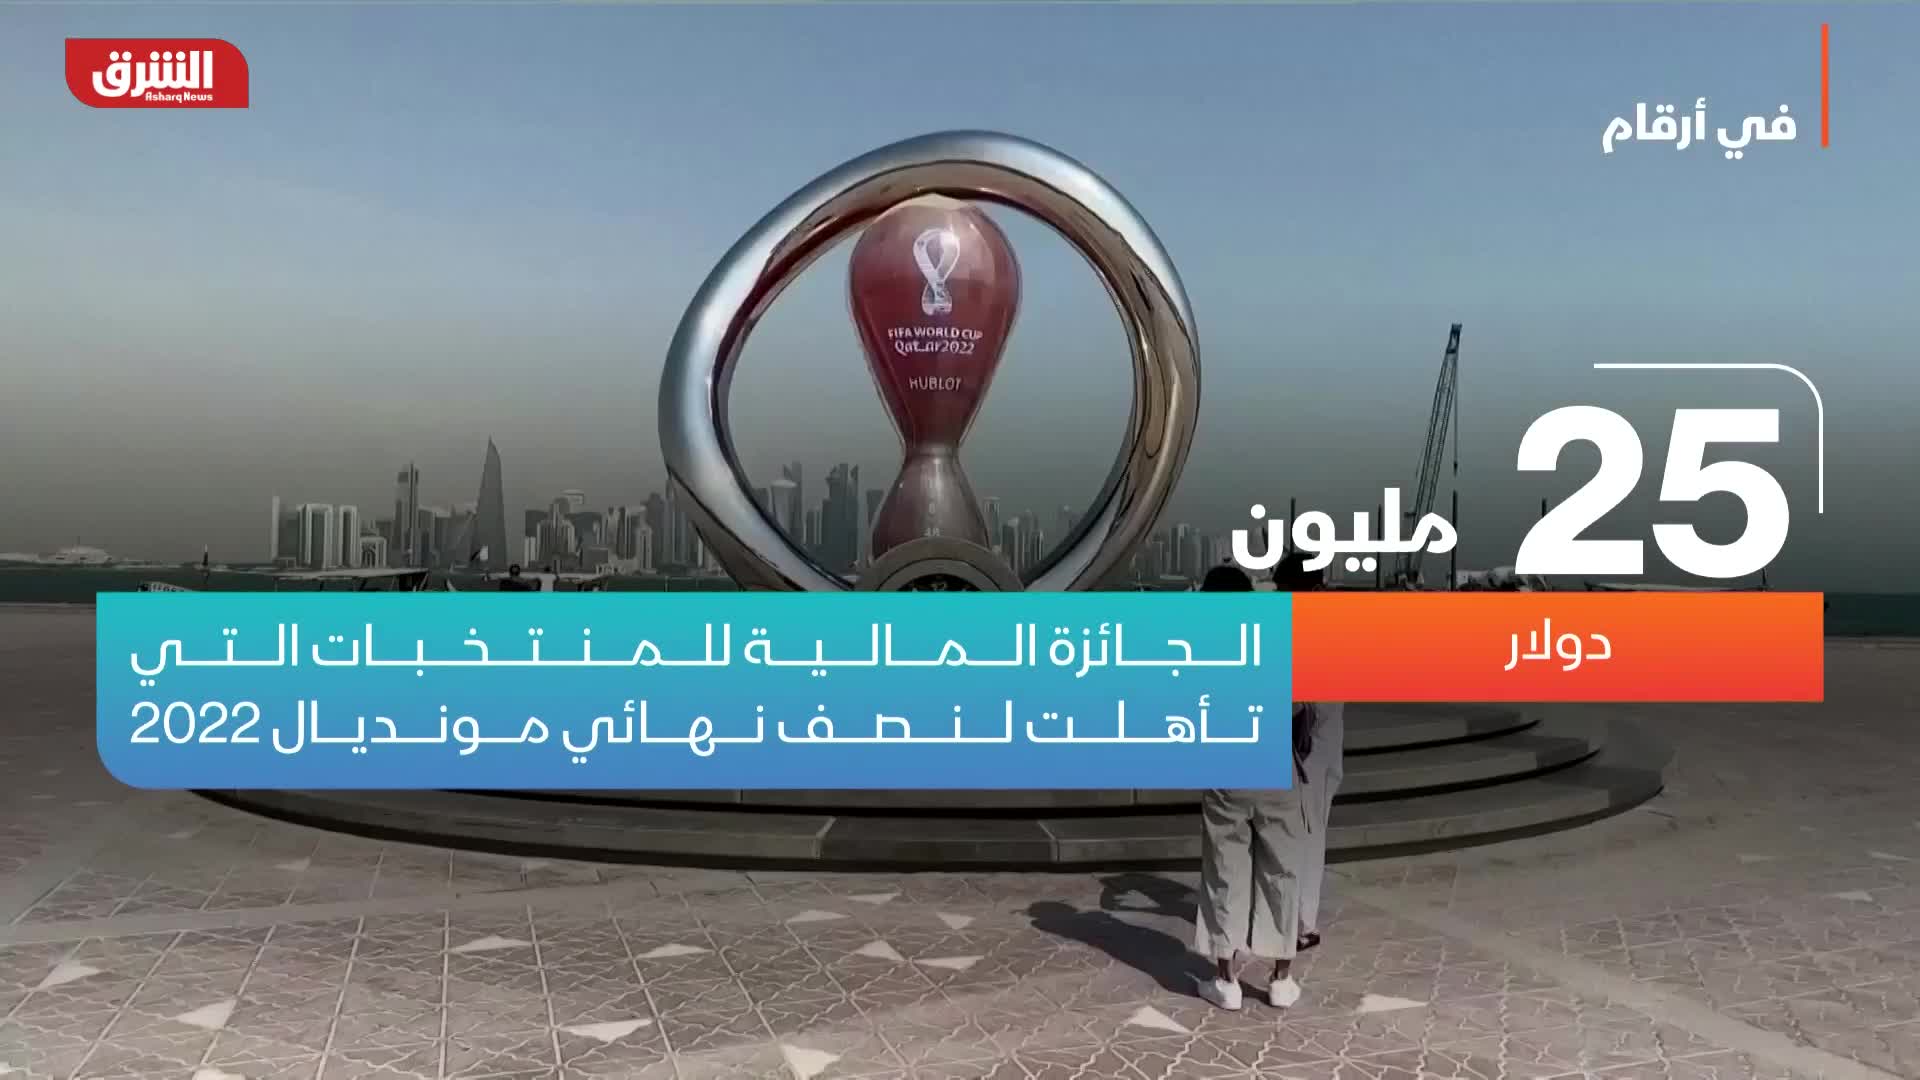 في أرقام.. إجمالي قيمة جوائز كأس العالم "فيفا" قطر 2022